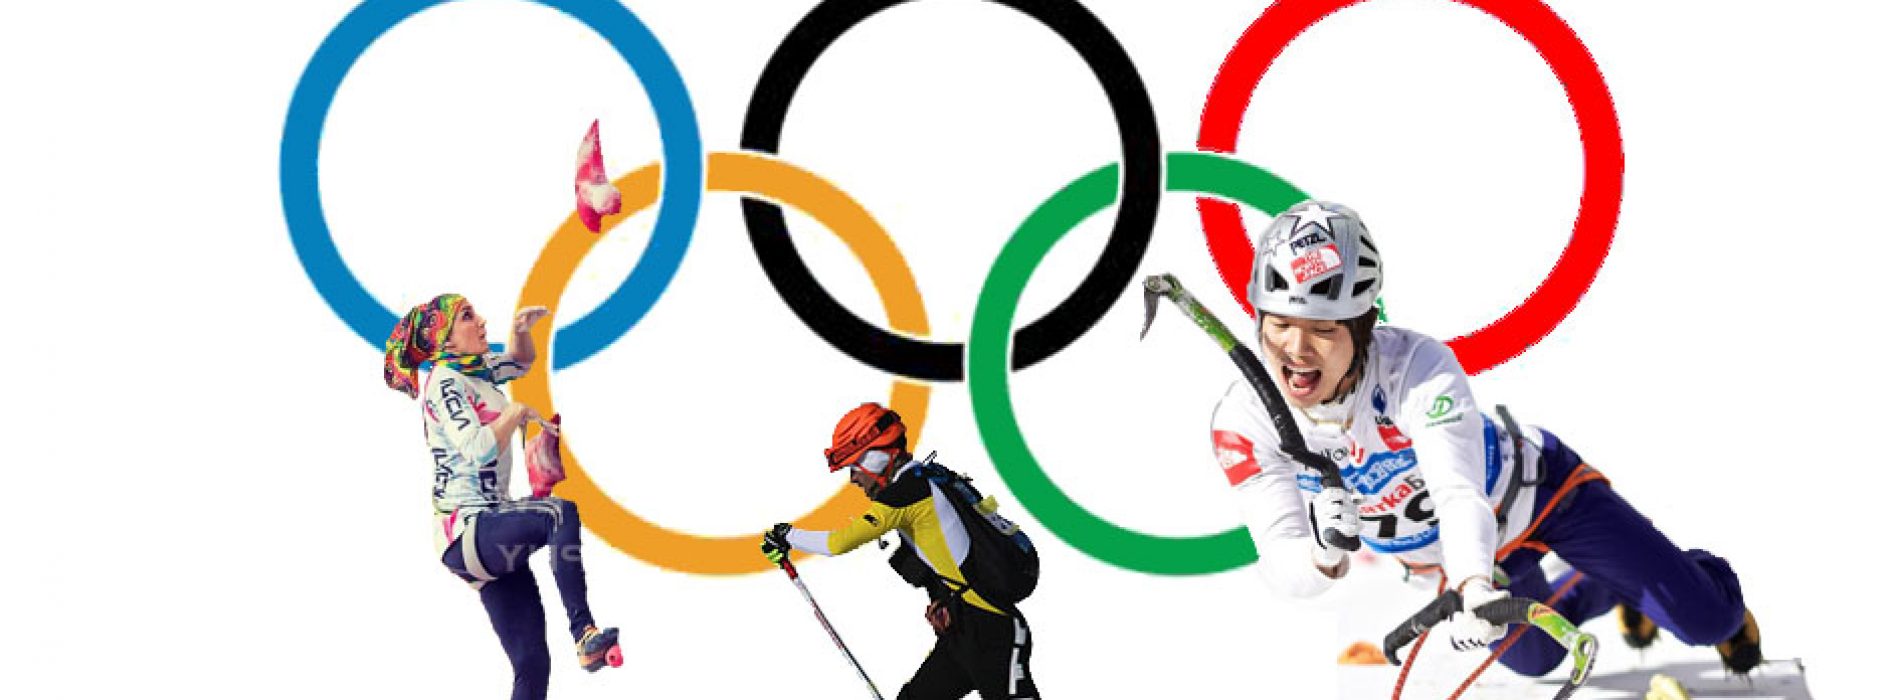 سنگنوردی، یخ نوردی و کوهنوردی با اسکی در آستانه ورود به المپیک